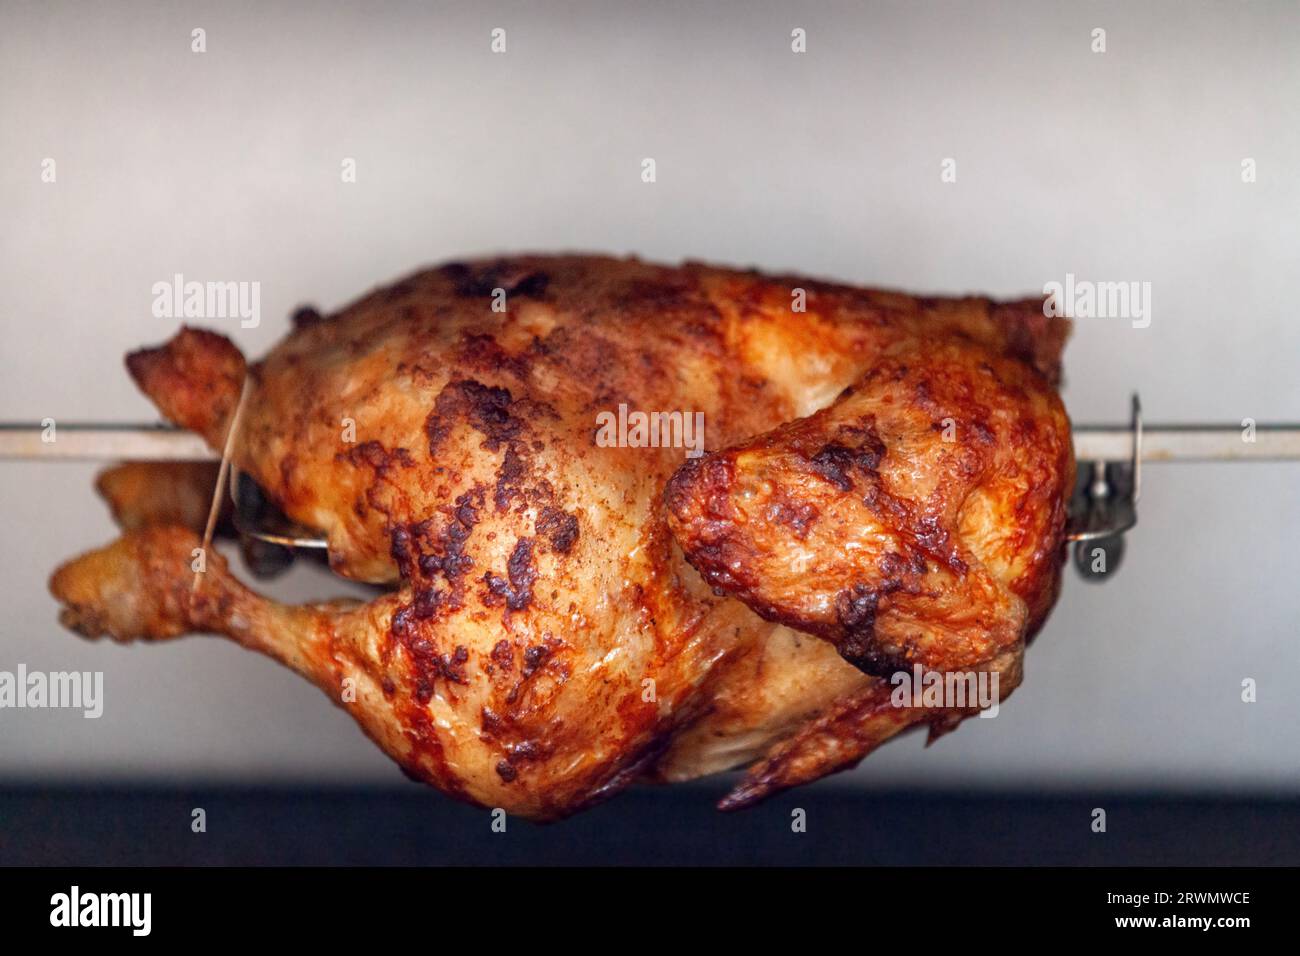 Un poulet rôti est un plat de poulet qui est cuit sur une rôtisserie en utilisant la chaleur directe dans laquelle le poulet est placé à côté de la source de chaleur. Banque D'Images